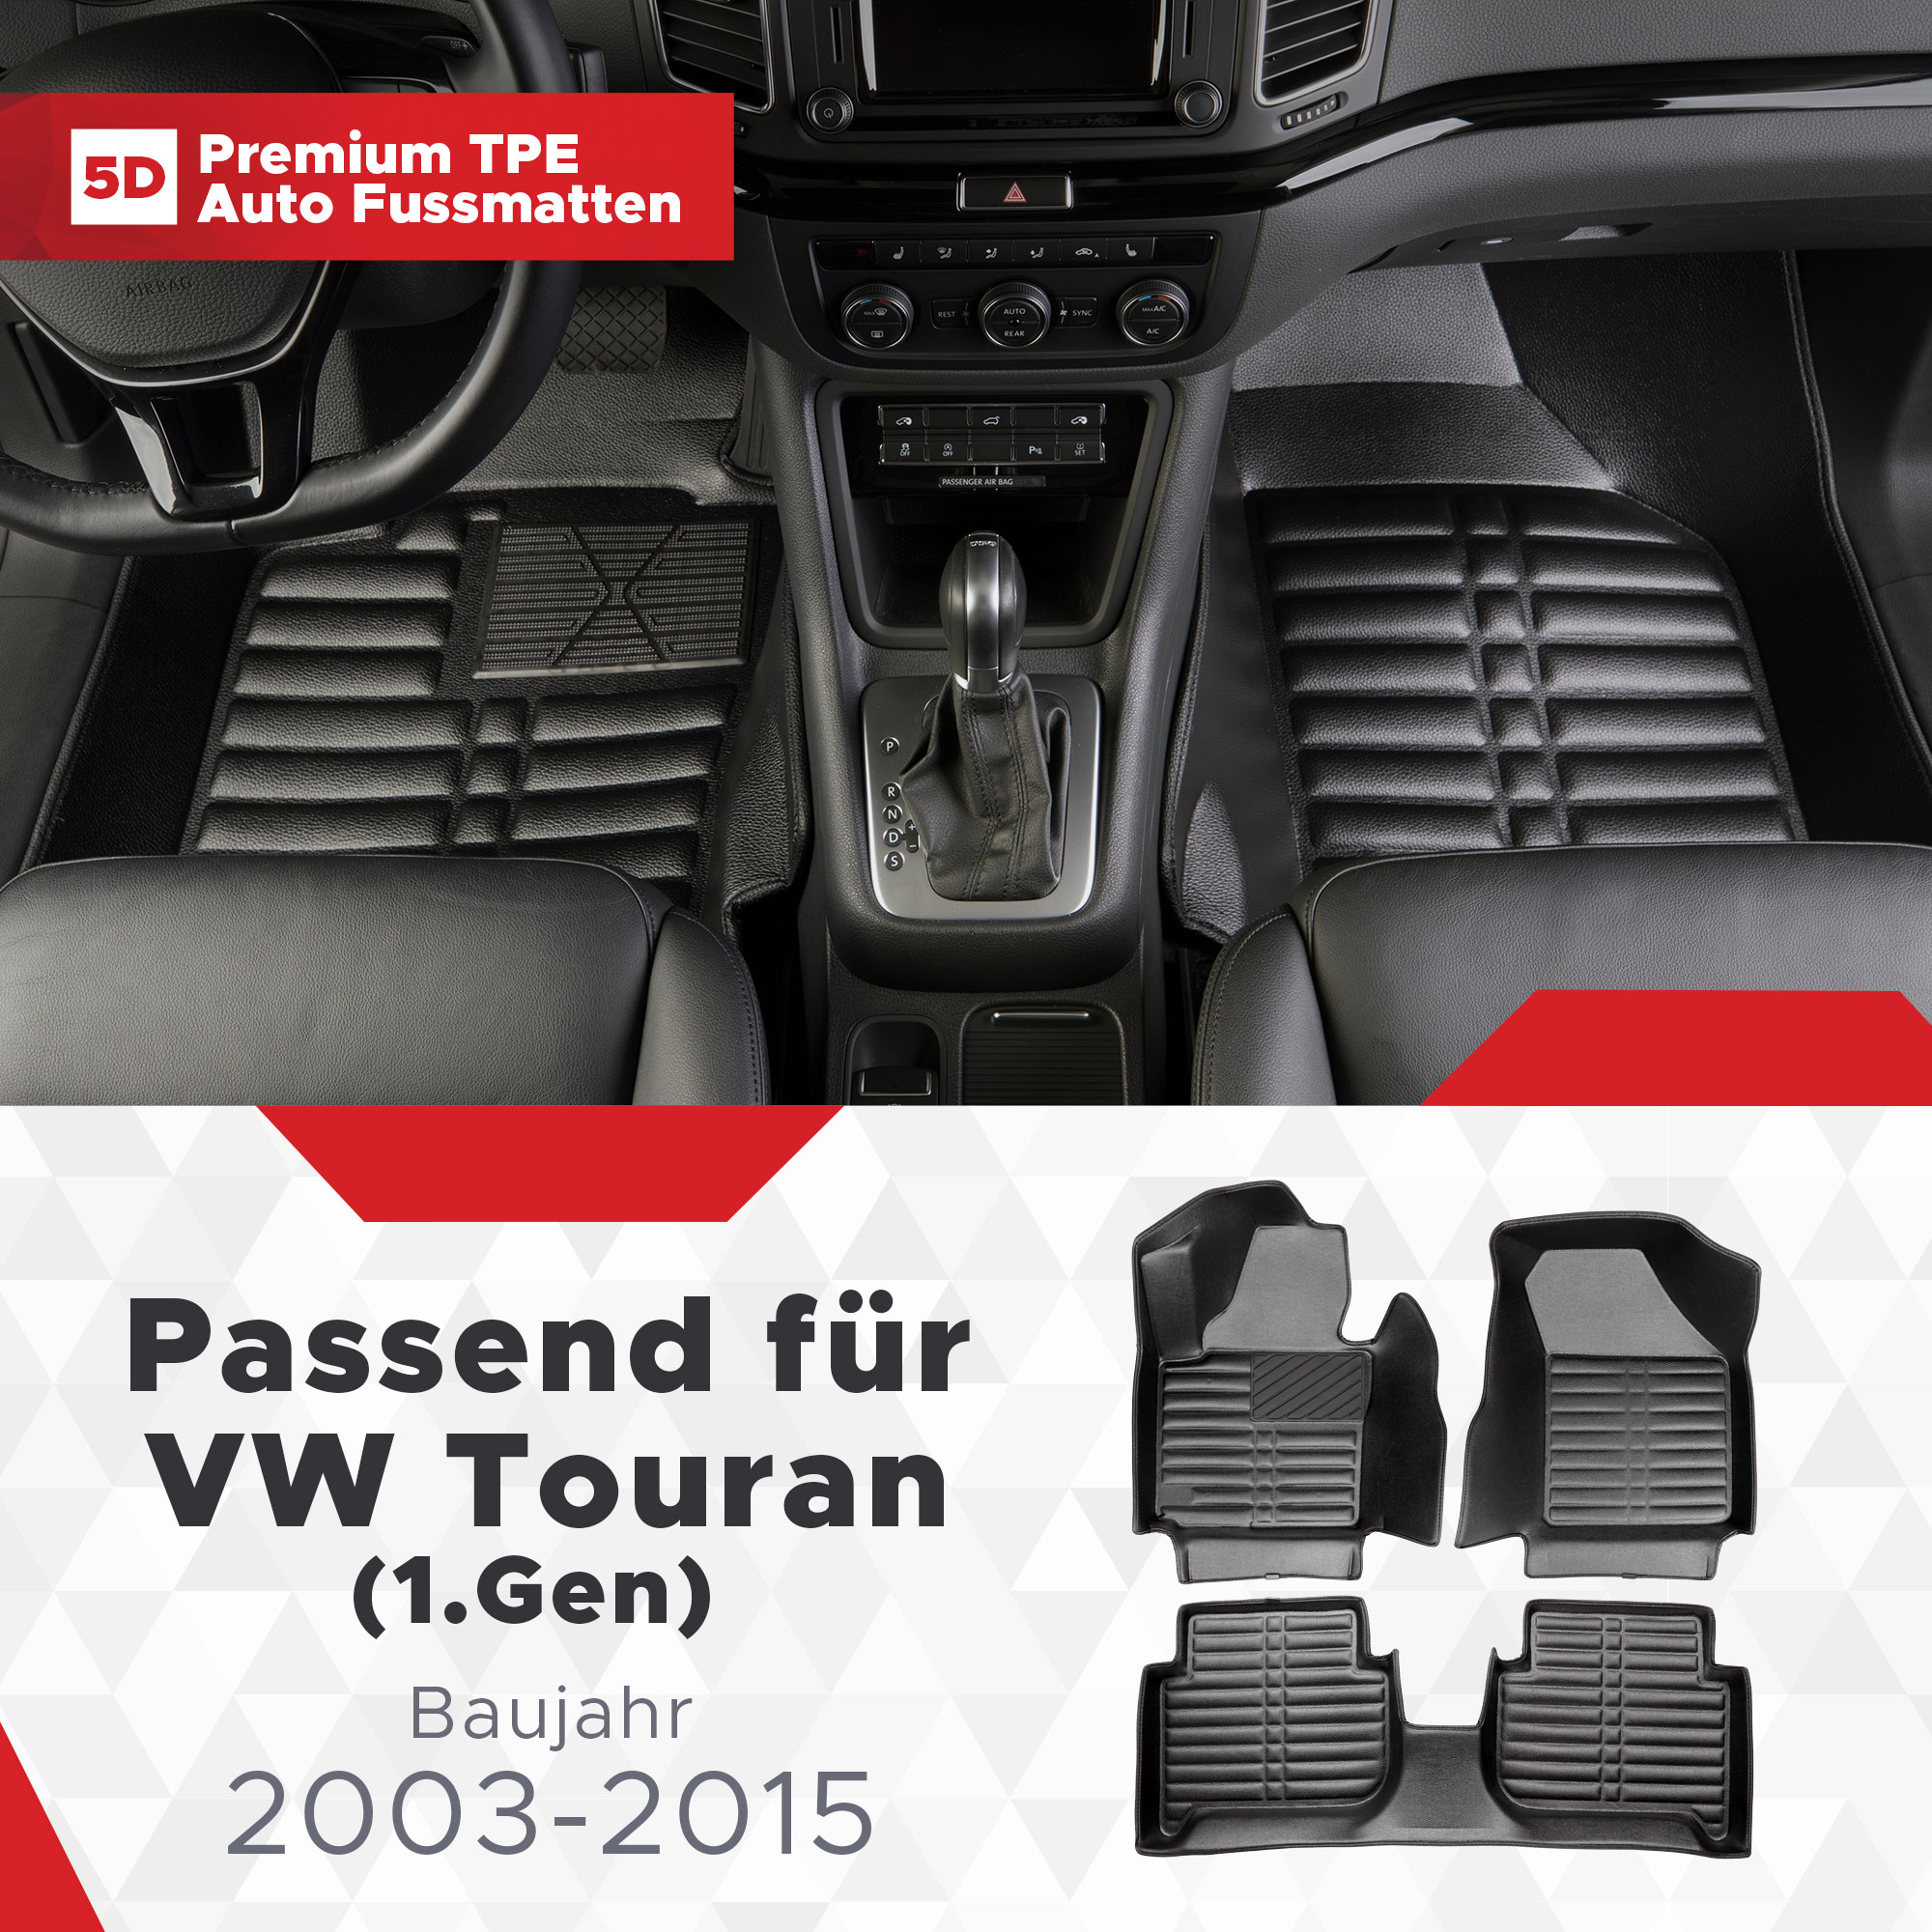 5D VW TPE Touran Fussmatten Bj (1.Gen) 2003-2015